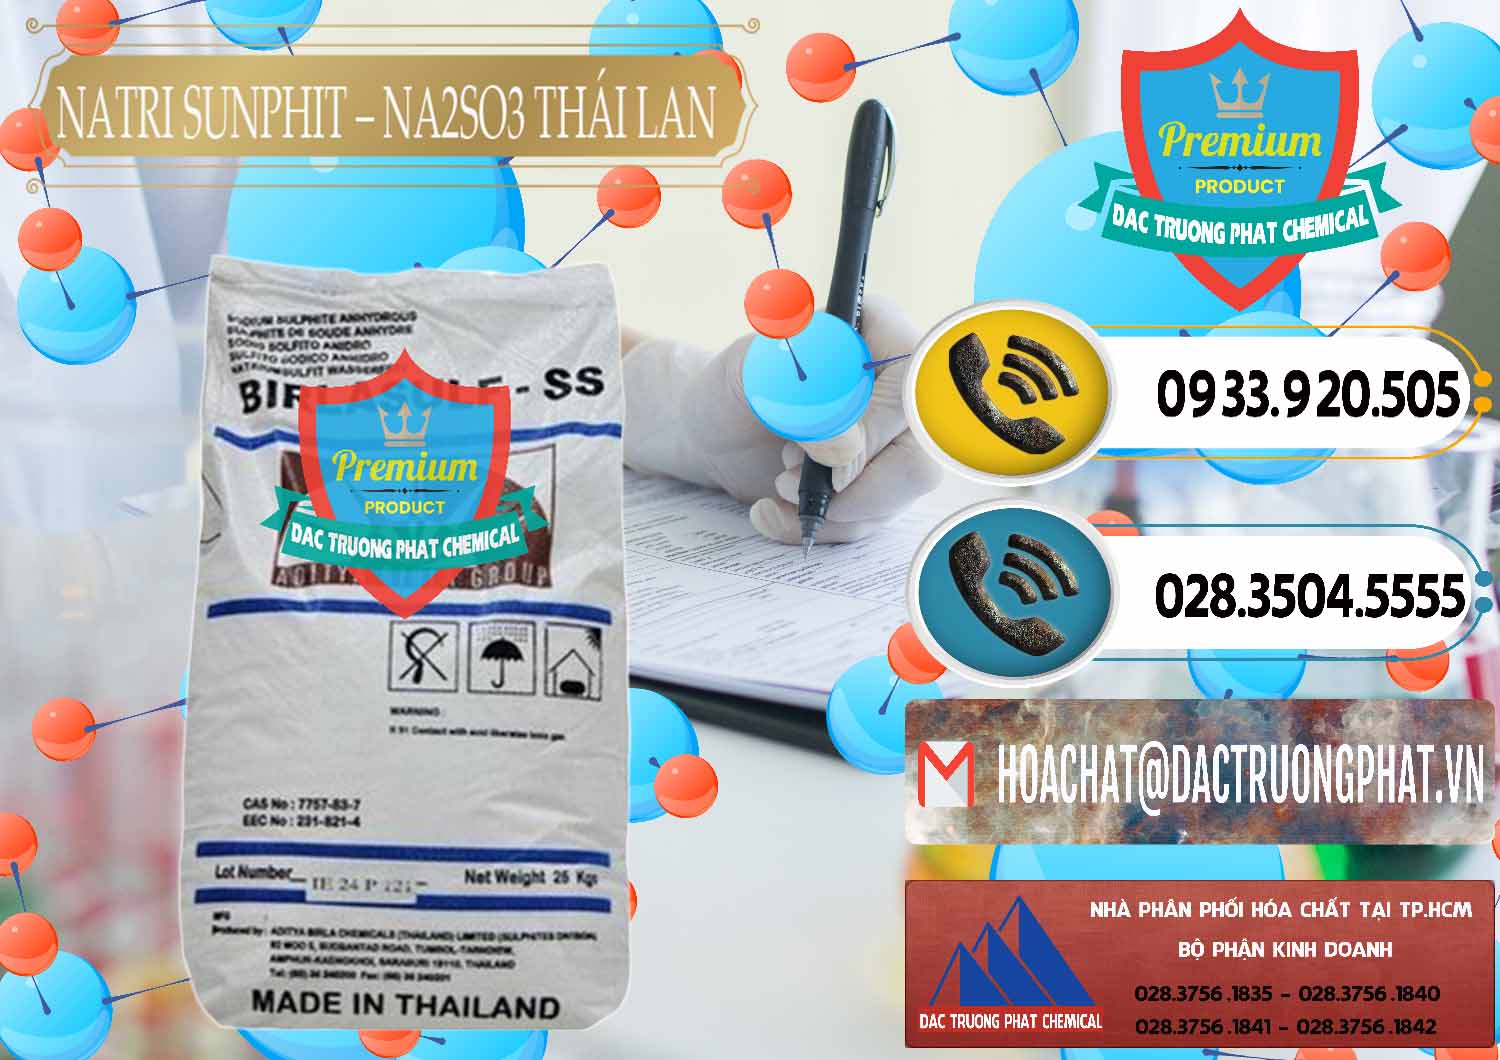 Chuyên nhập khẩu & bán Natri Sunphit - NA2SO3 Thái Lan - 0105 - Nơi chuyên phân phối _ bán hóa chất tại TP.HCM - hoachatdetnhuom.vn